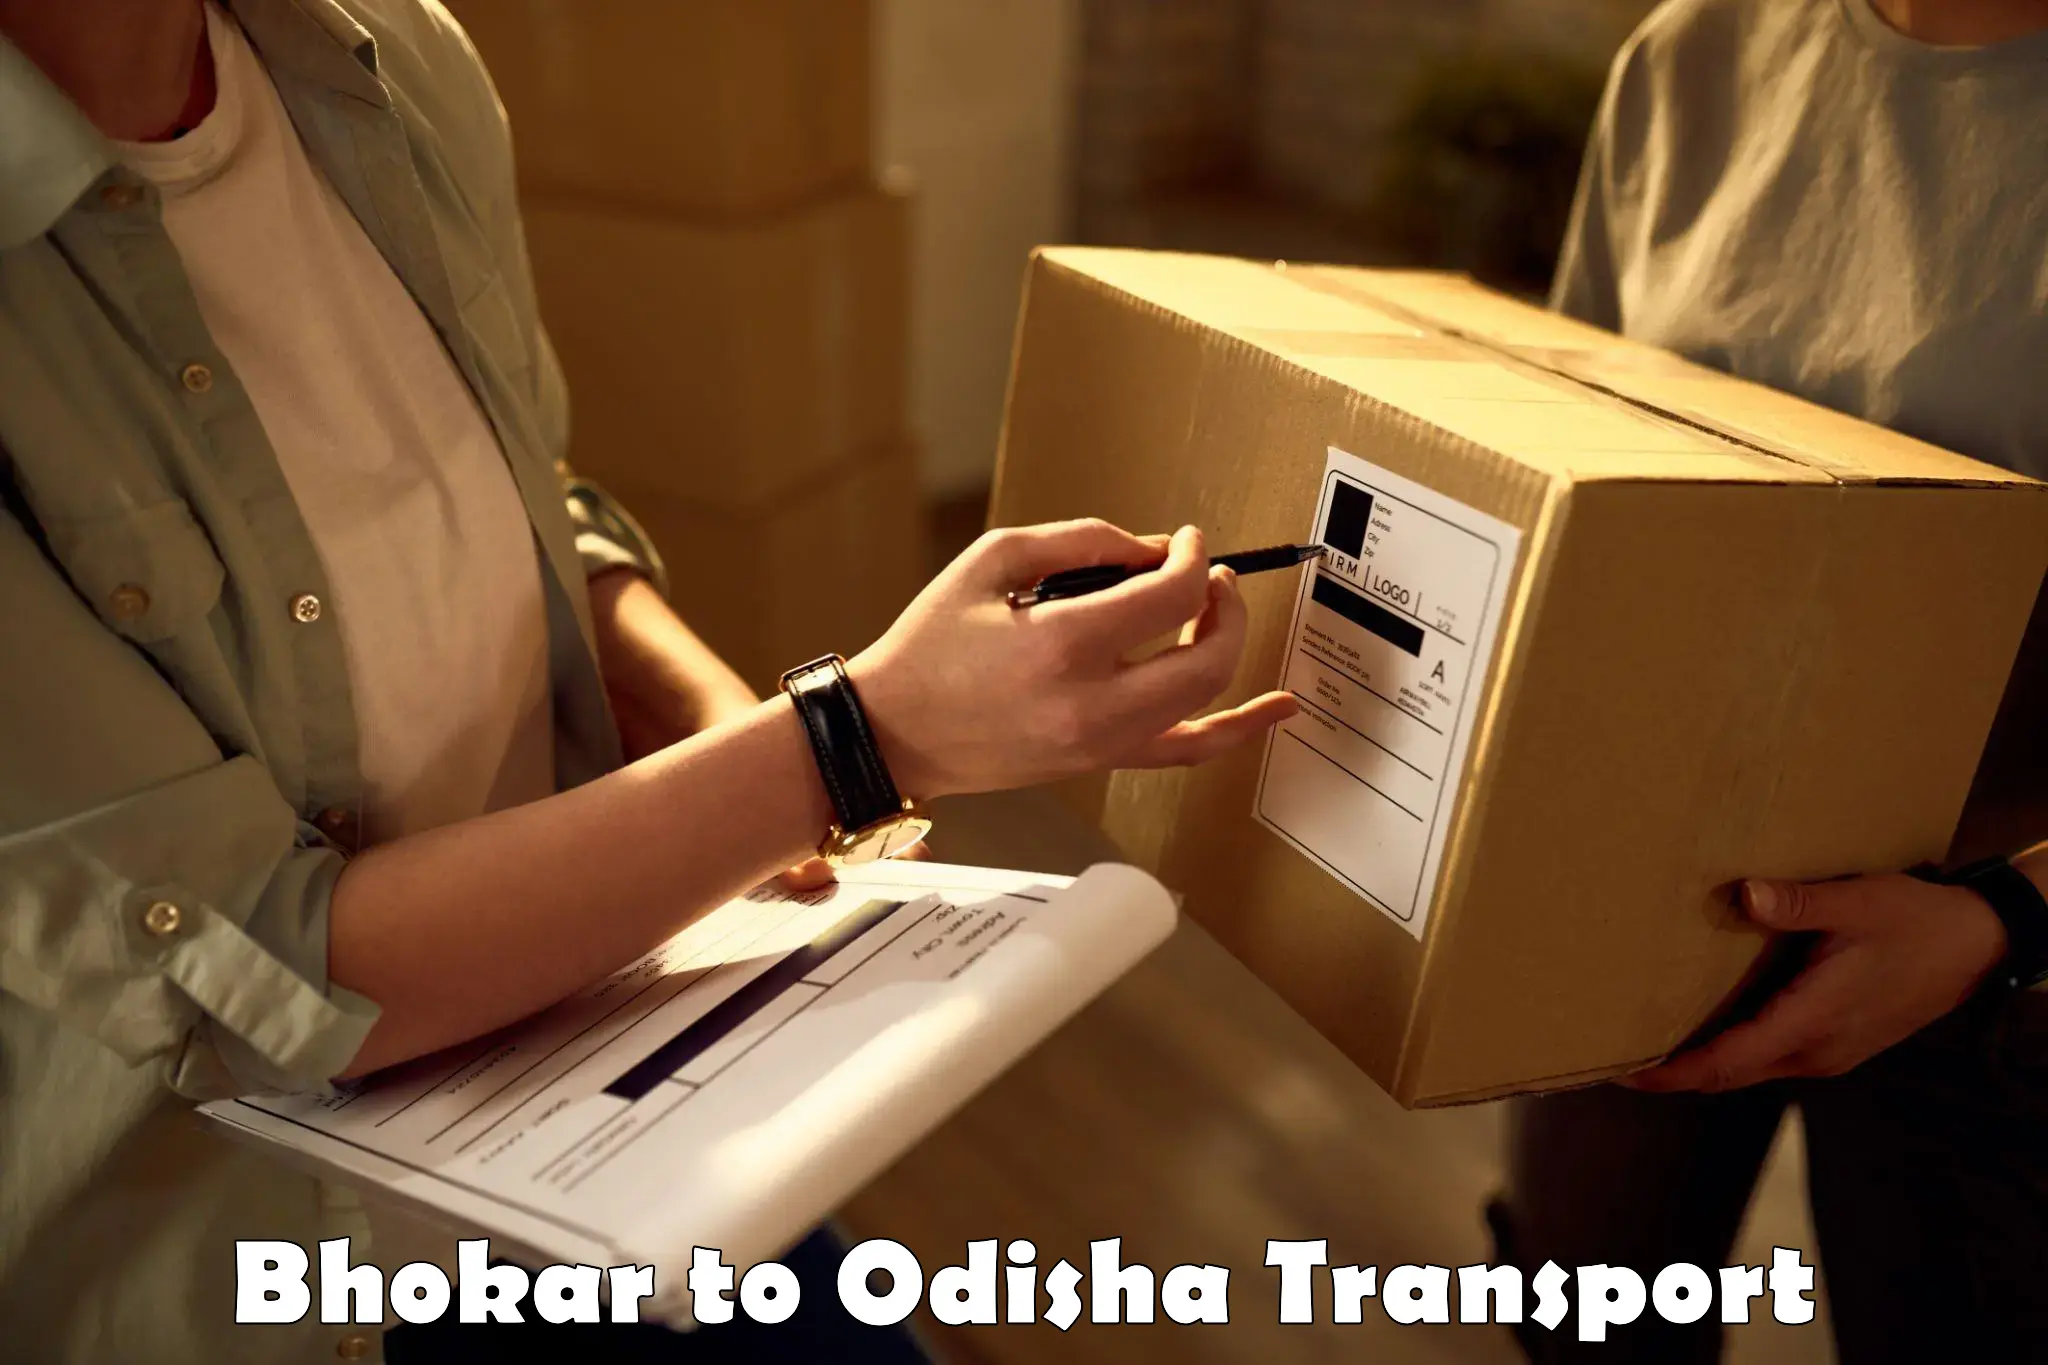 Transportation solution services Bhokar to Jagatsinghpur